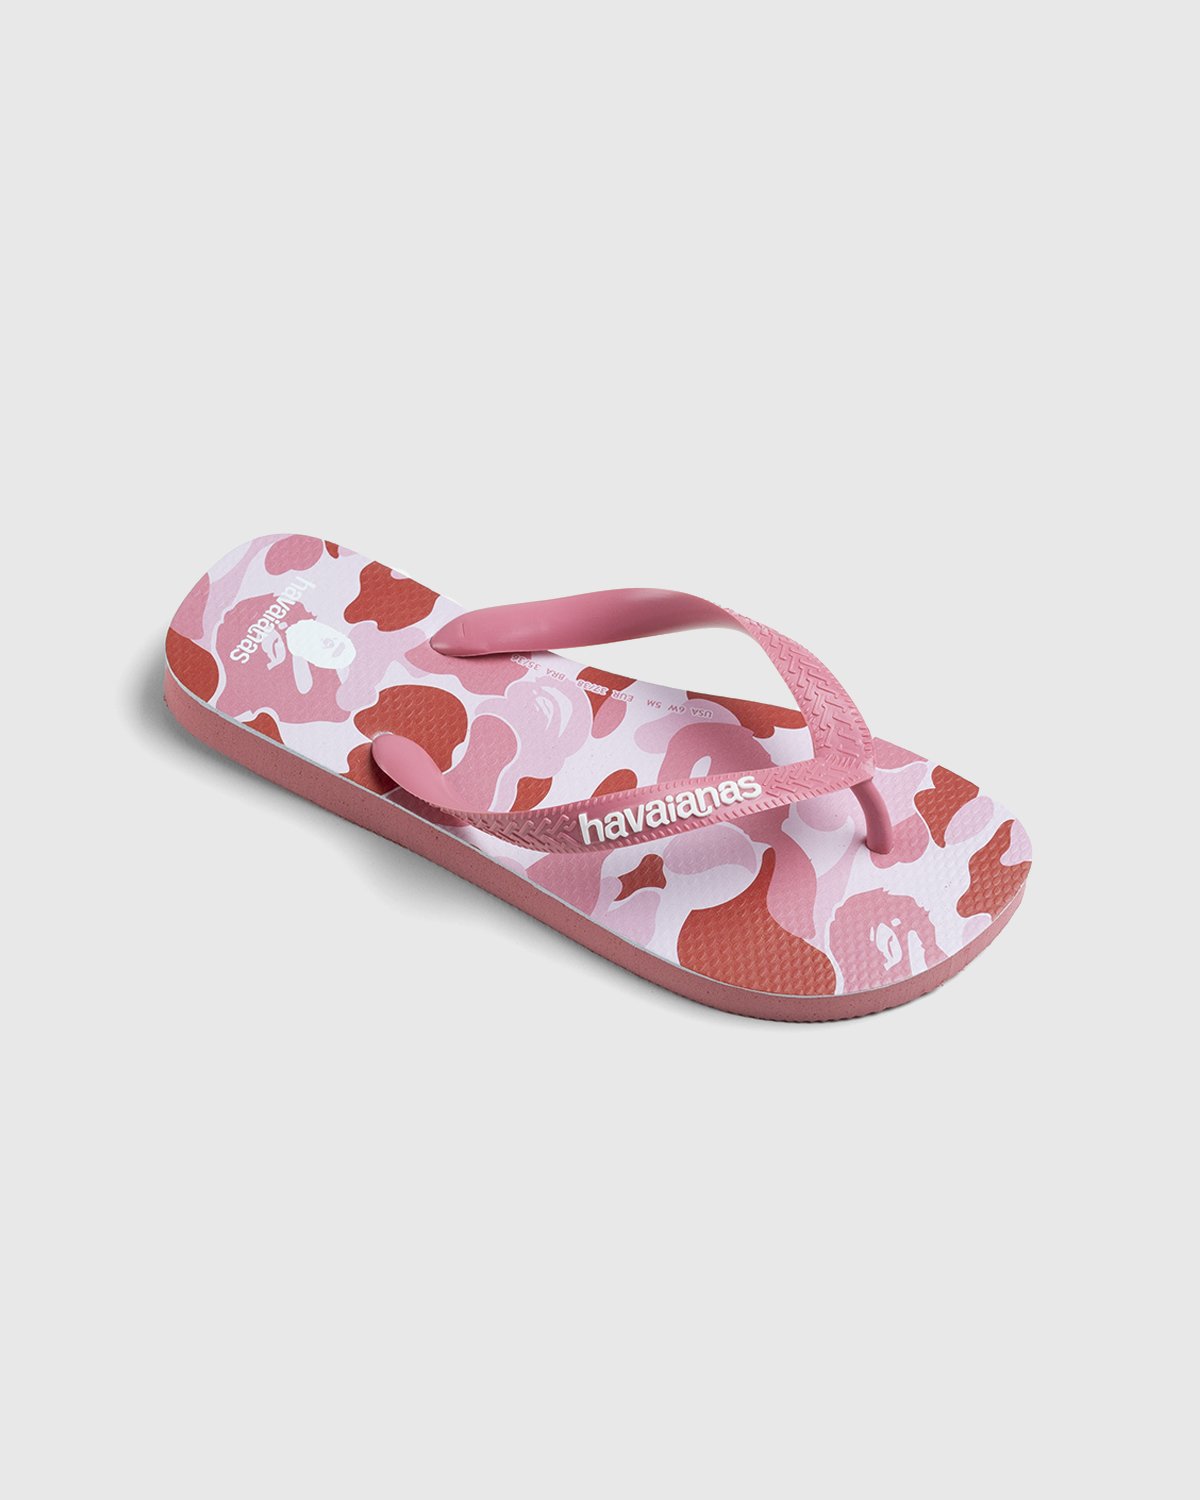 BAPE - Top Pink - Footwear - Pink - Image 2